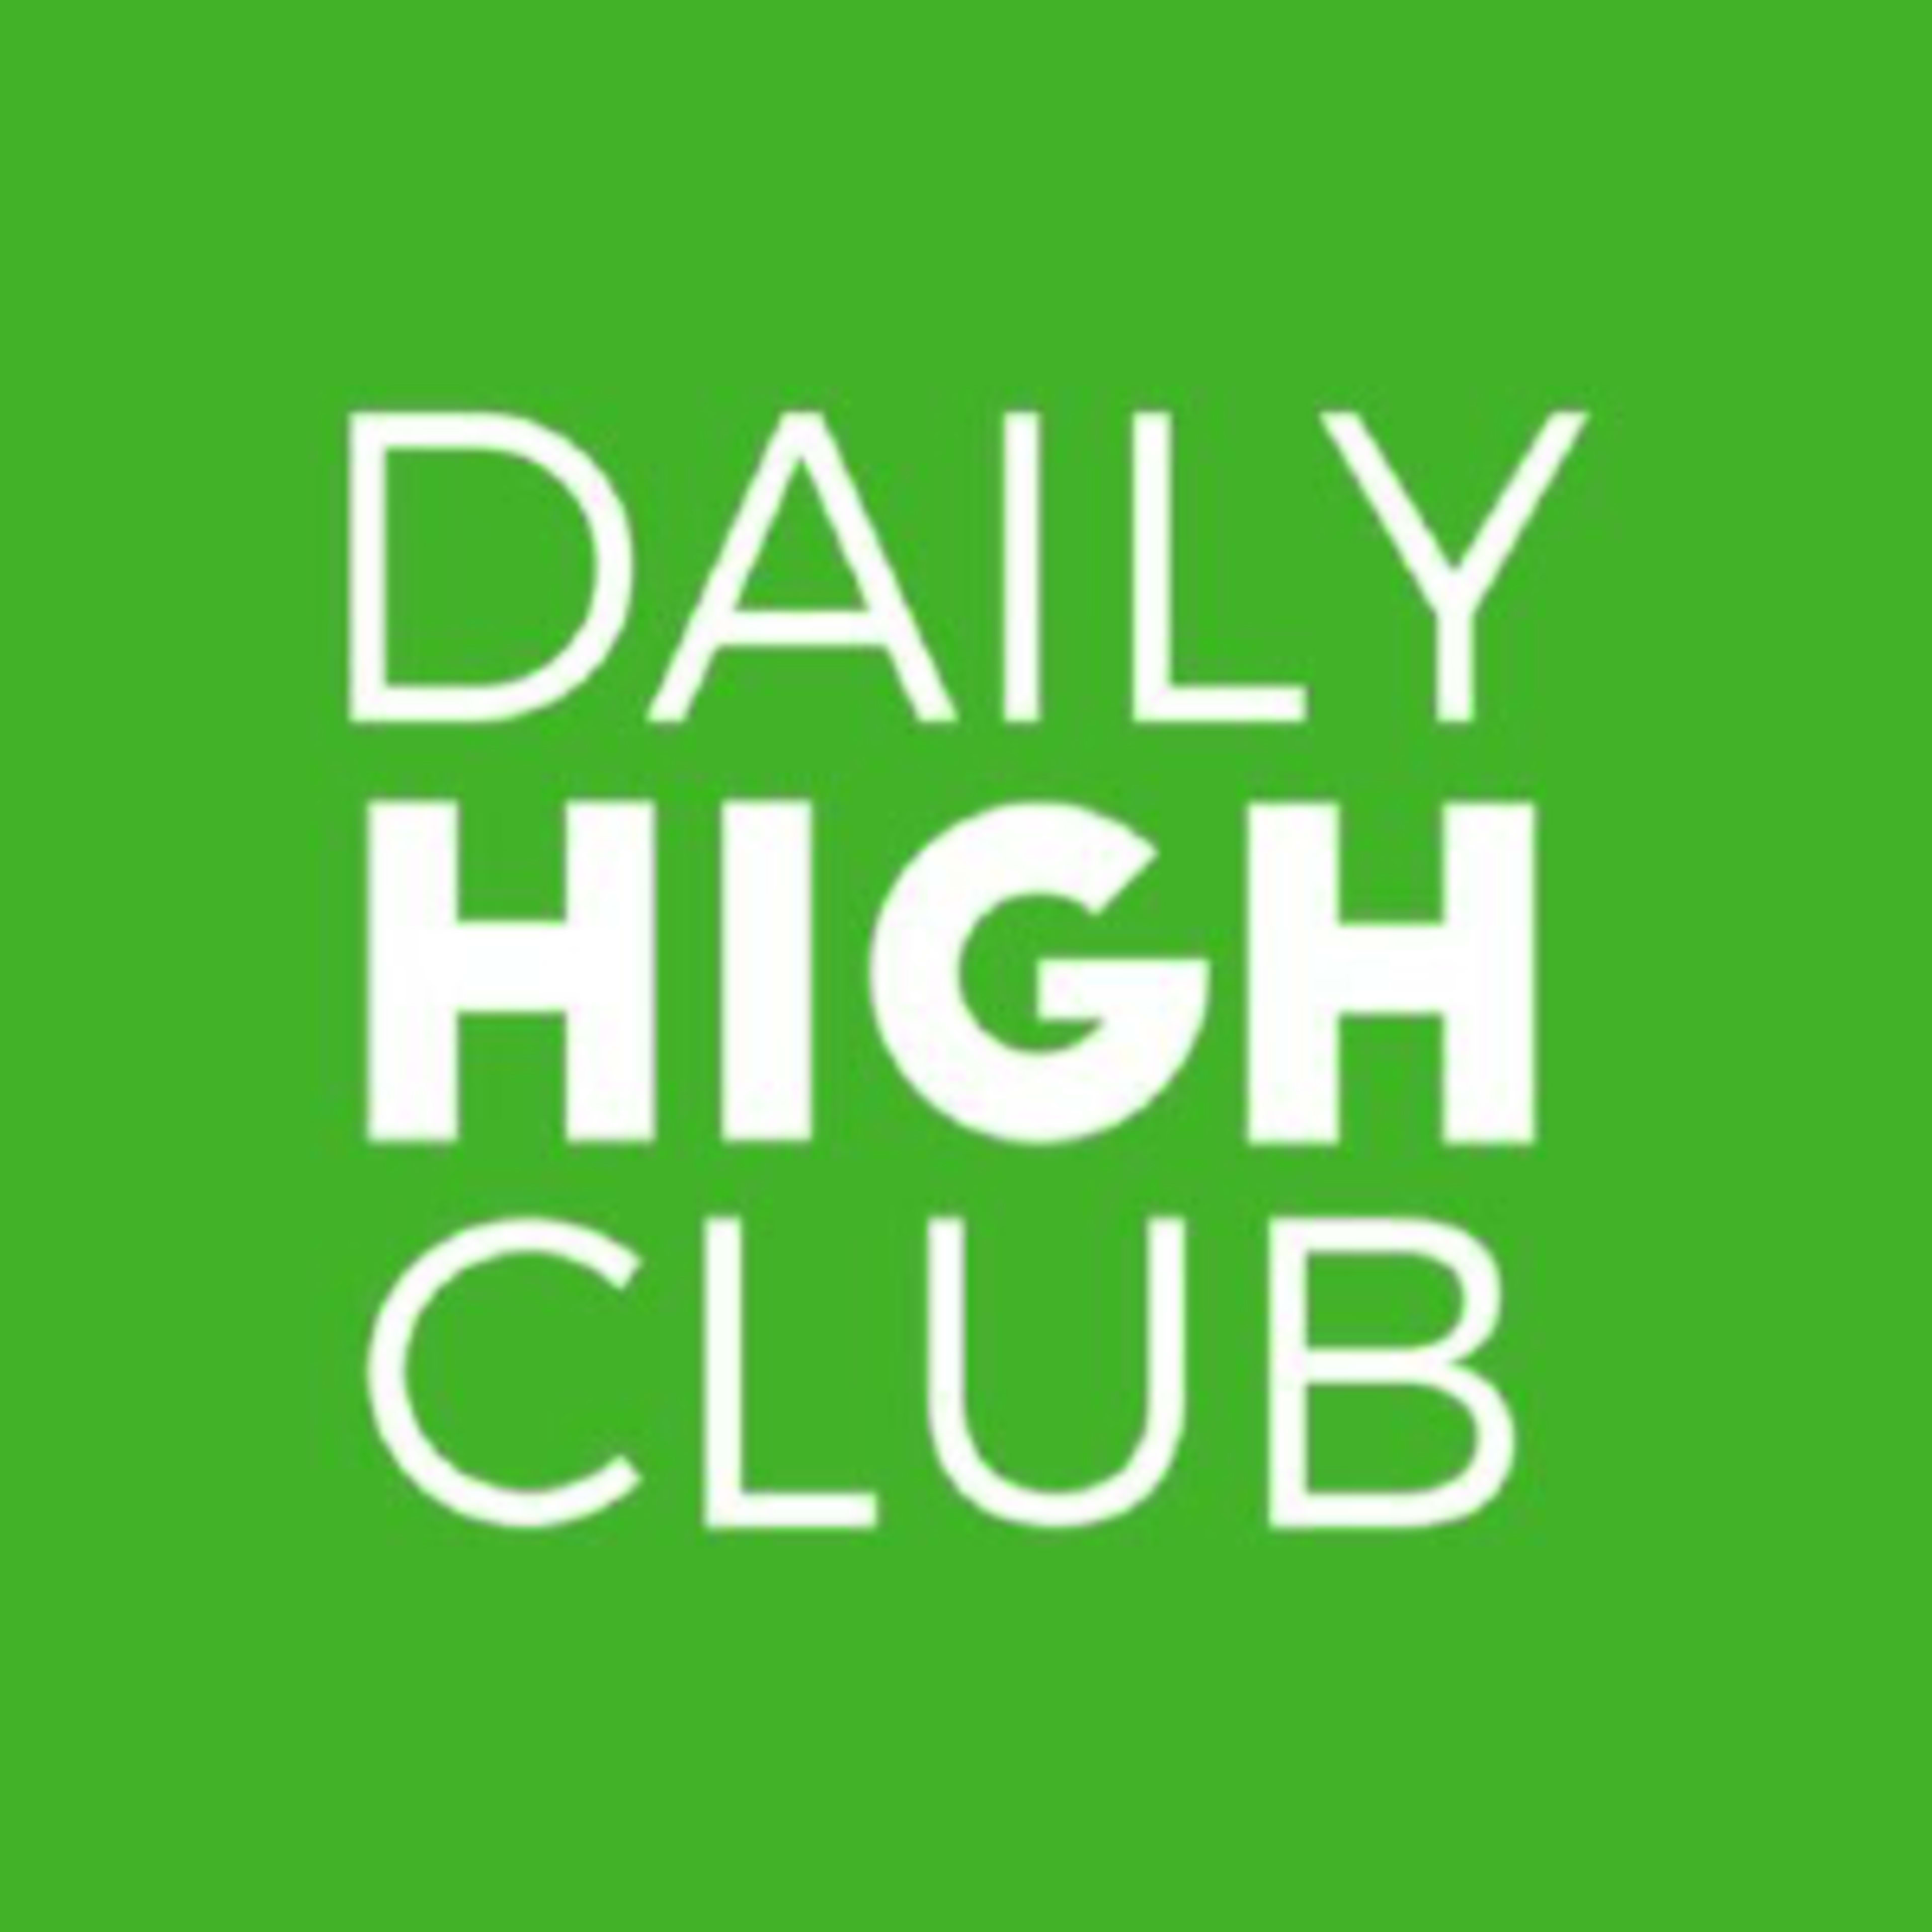 Daily High Club Code